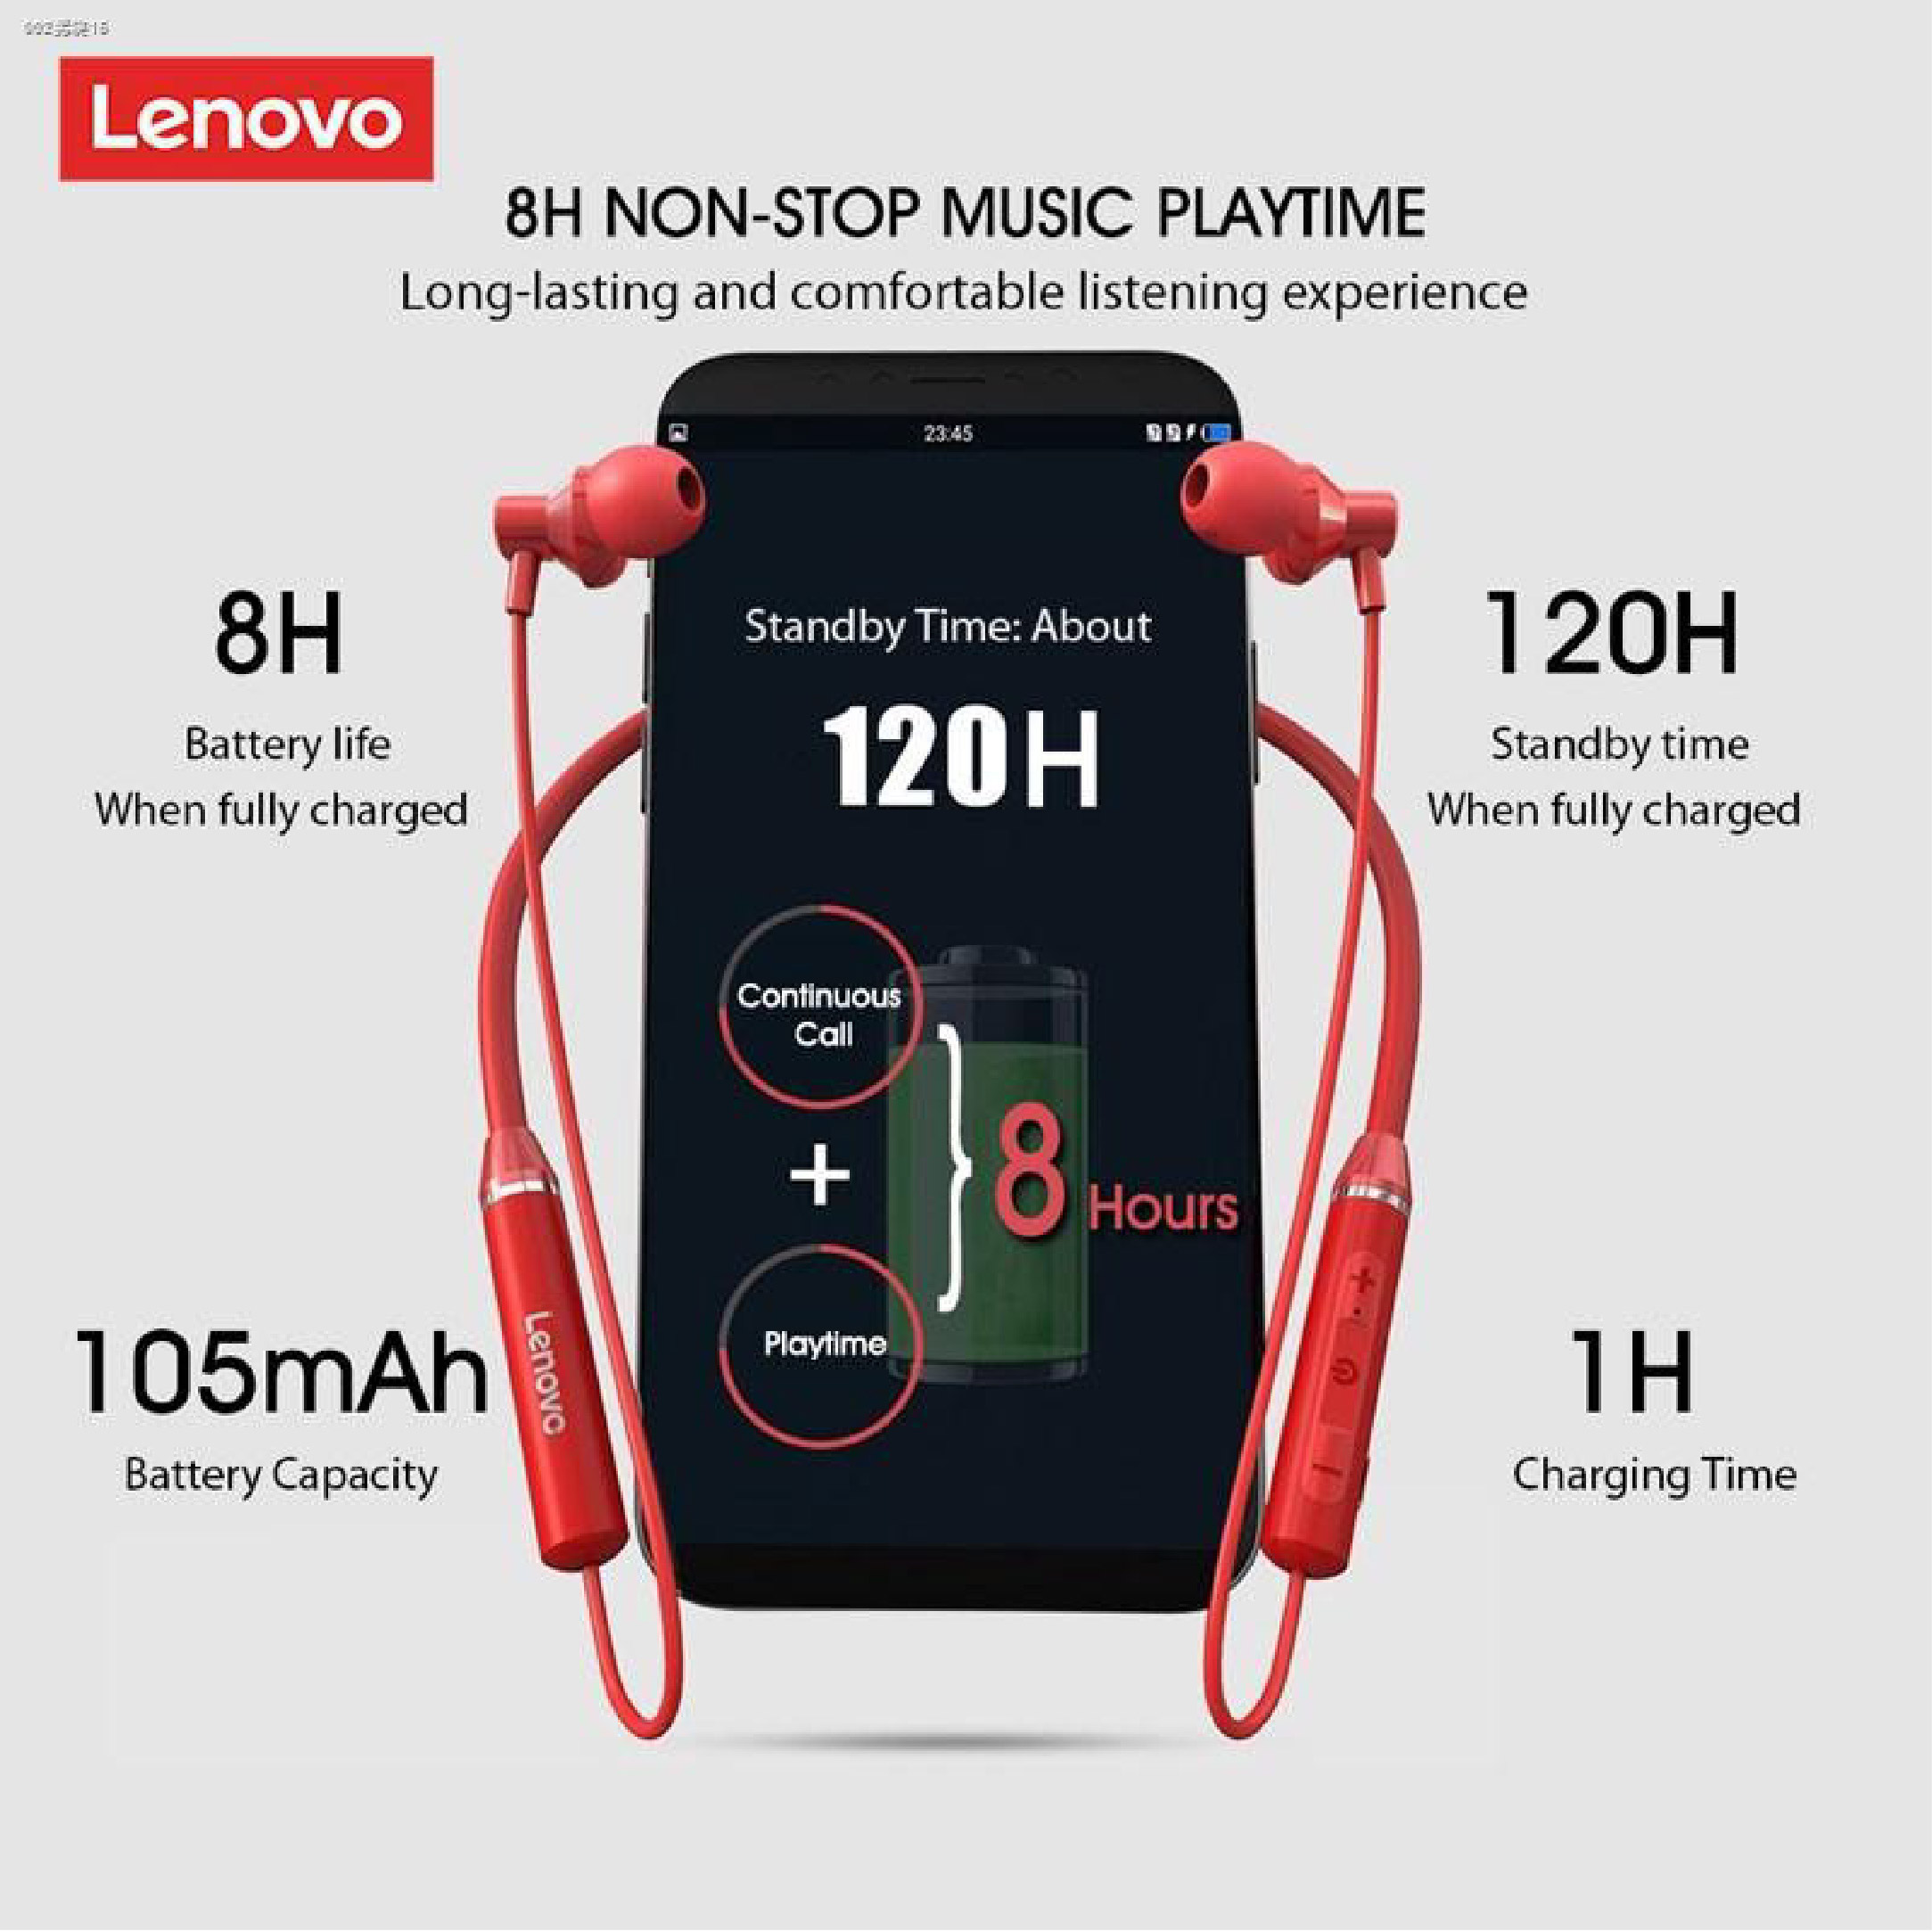 ข้อมูลเกี่ยวกับ Lenovo thinkplus live pods XE05 หูฟัง บลูทูธ Blth แบบ In-ear เหมาะสำหรับ ใส่ออกกำลังกาย ของแท้ 100%